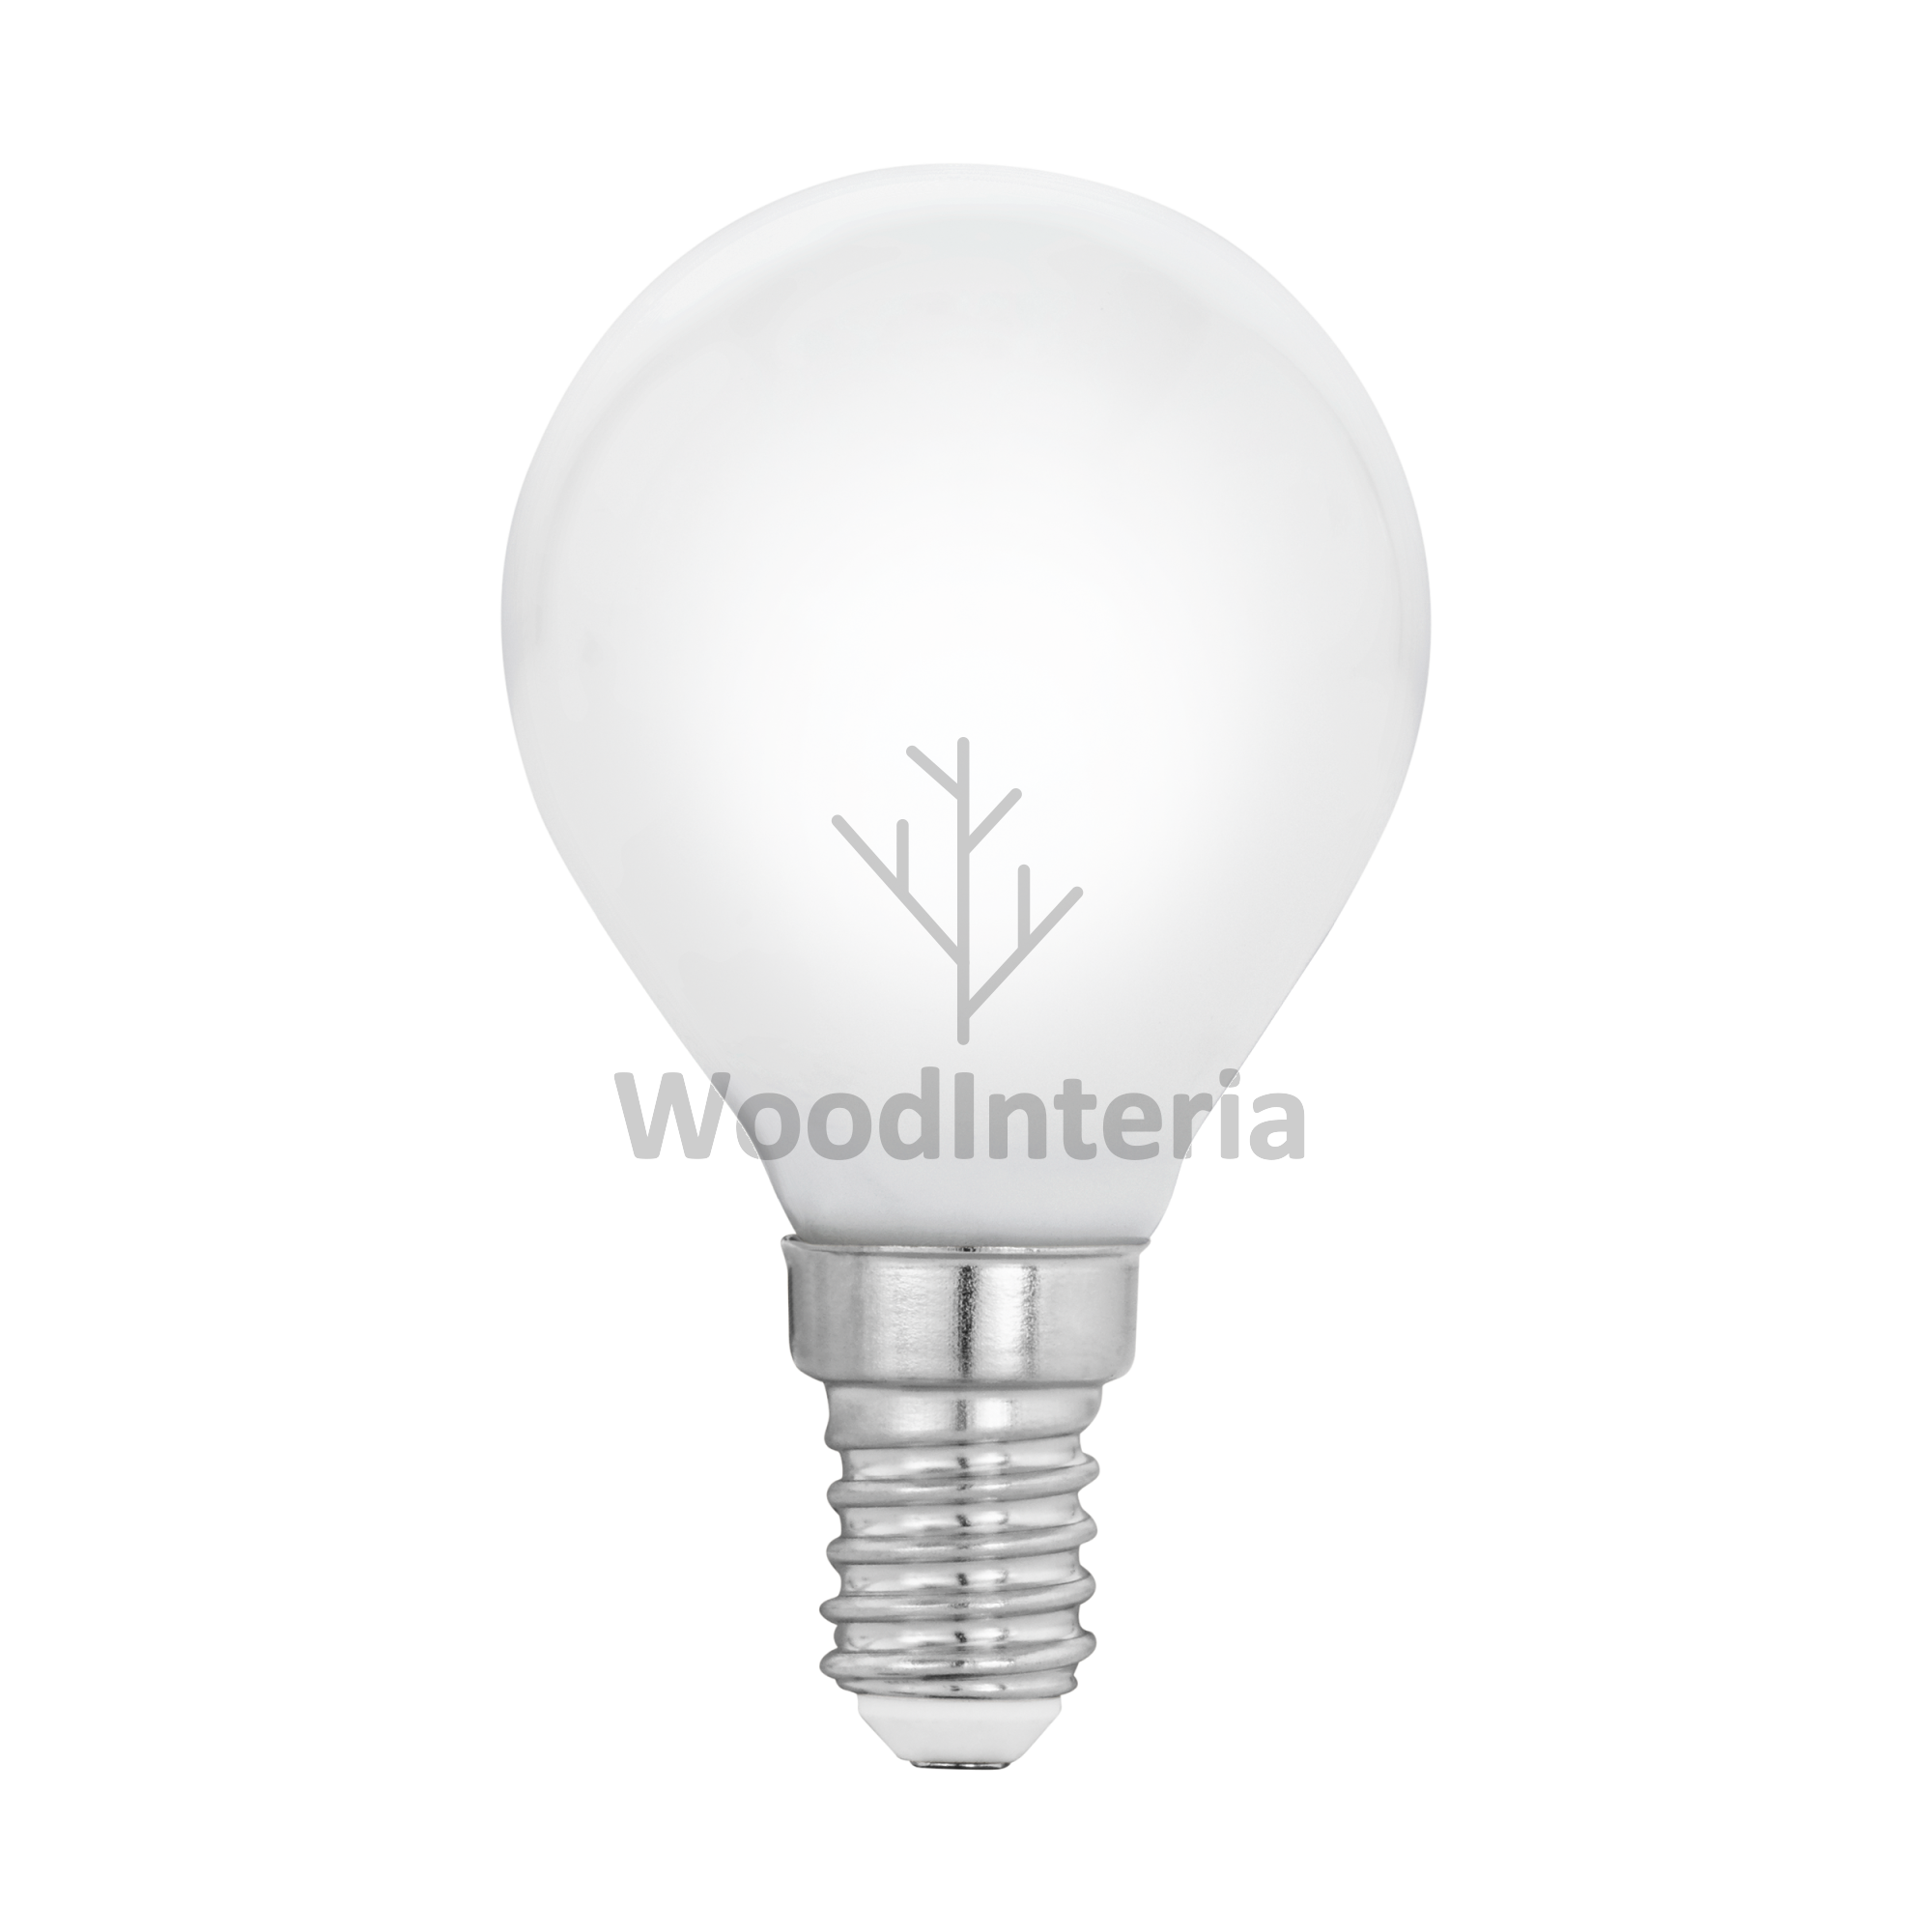 фото лампочка white bulb #9 led в скандинавском интерьере лофт эко | WoodInteria